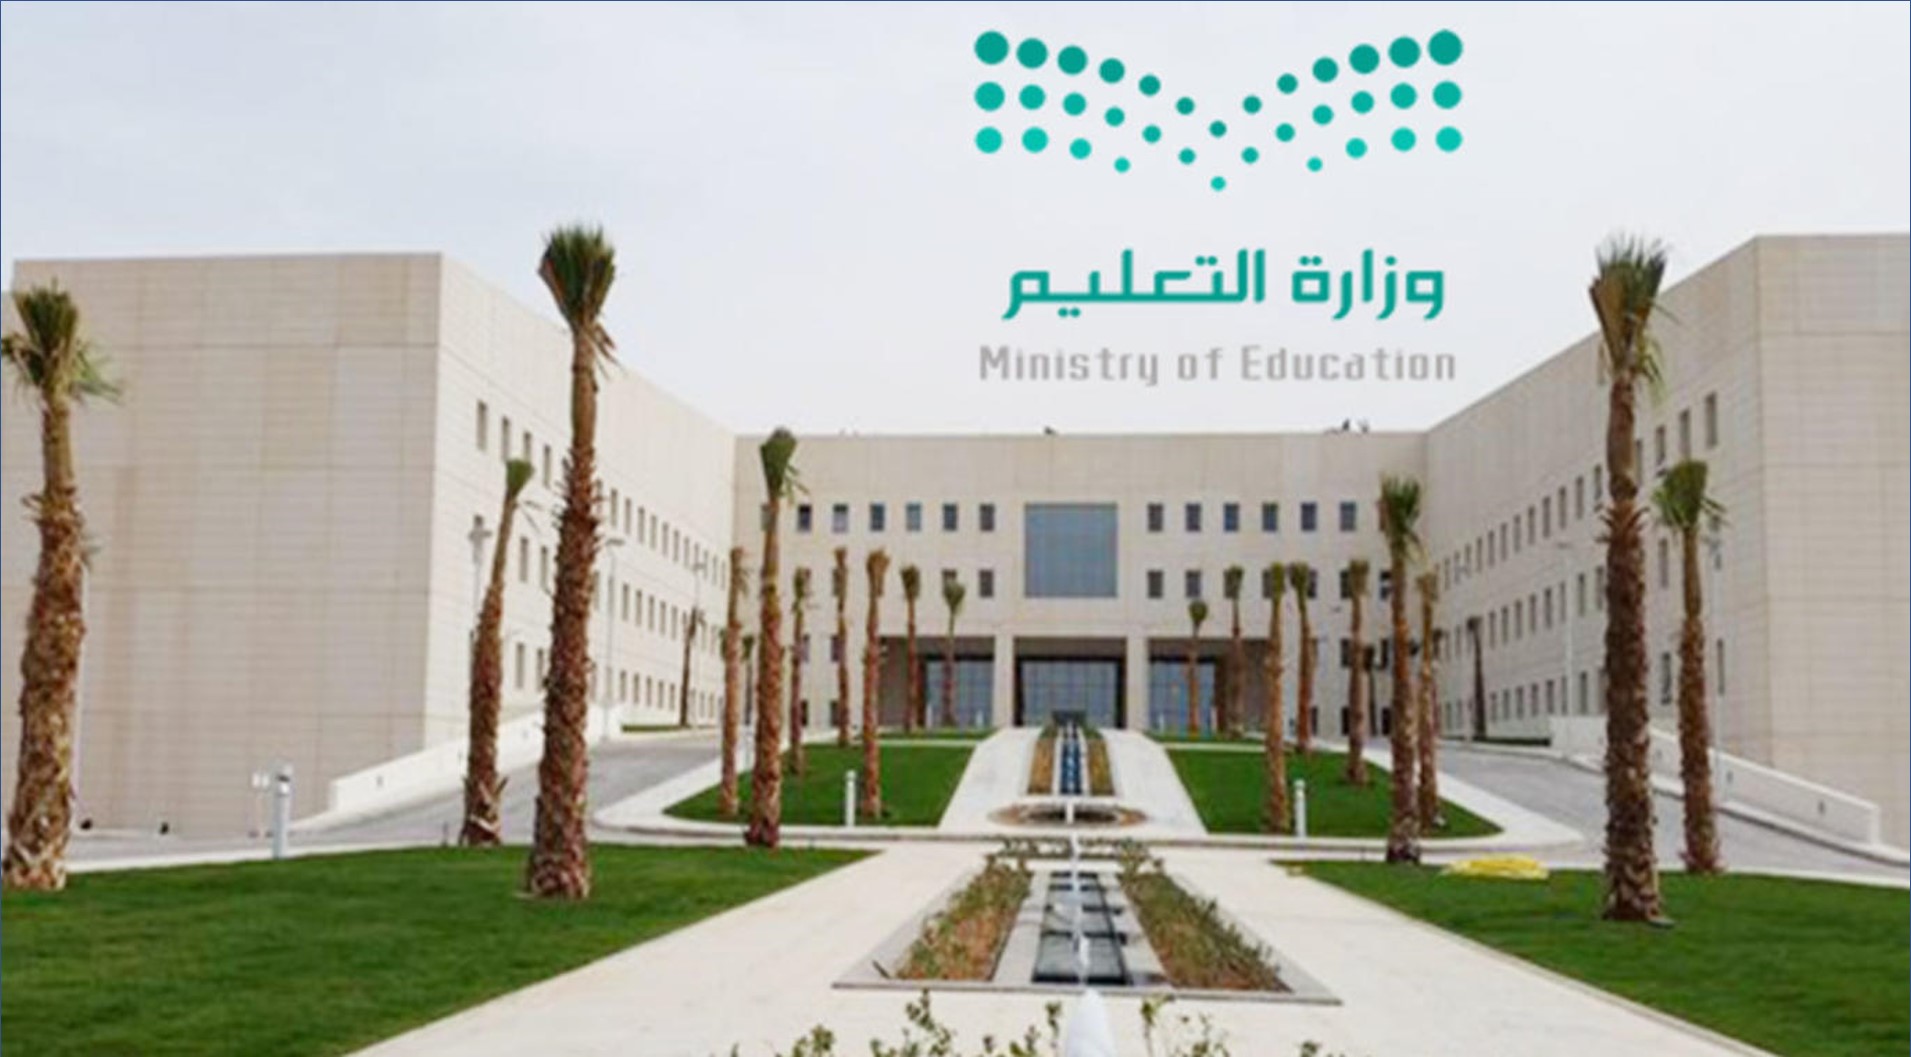 وزارة التعليم إدارة تعليم المخواة تعلن عن 50 وظيفة للرجال والنساء